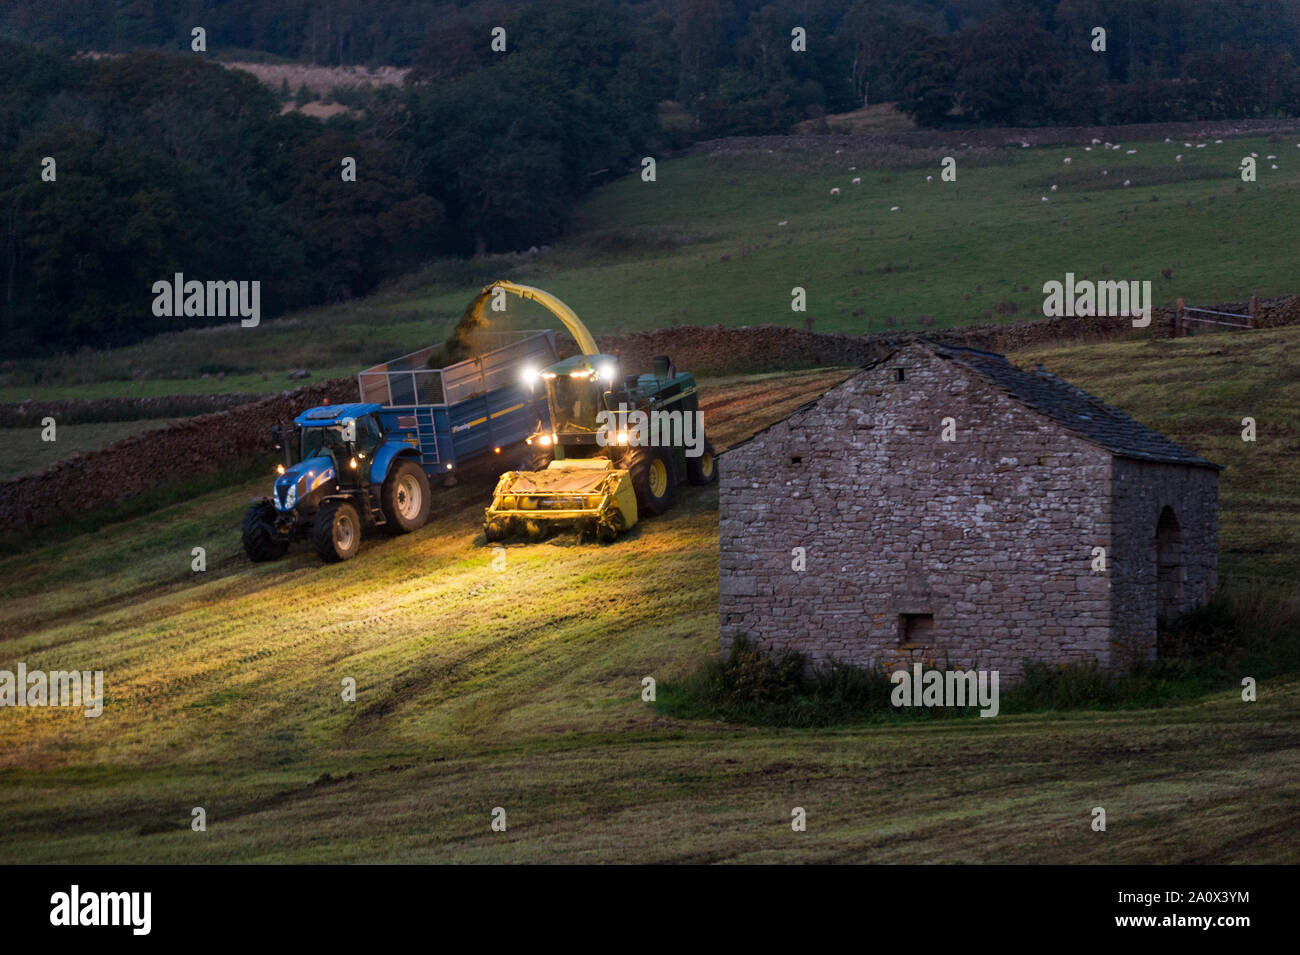 La récolte de fin de nuit d'herbe pour l'ensilage près de régler, North Yorkshire, UK. Une ensileuse dépose l'herbe tondue dans une remorque qui longe. Banque D'Images